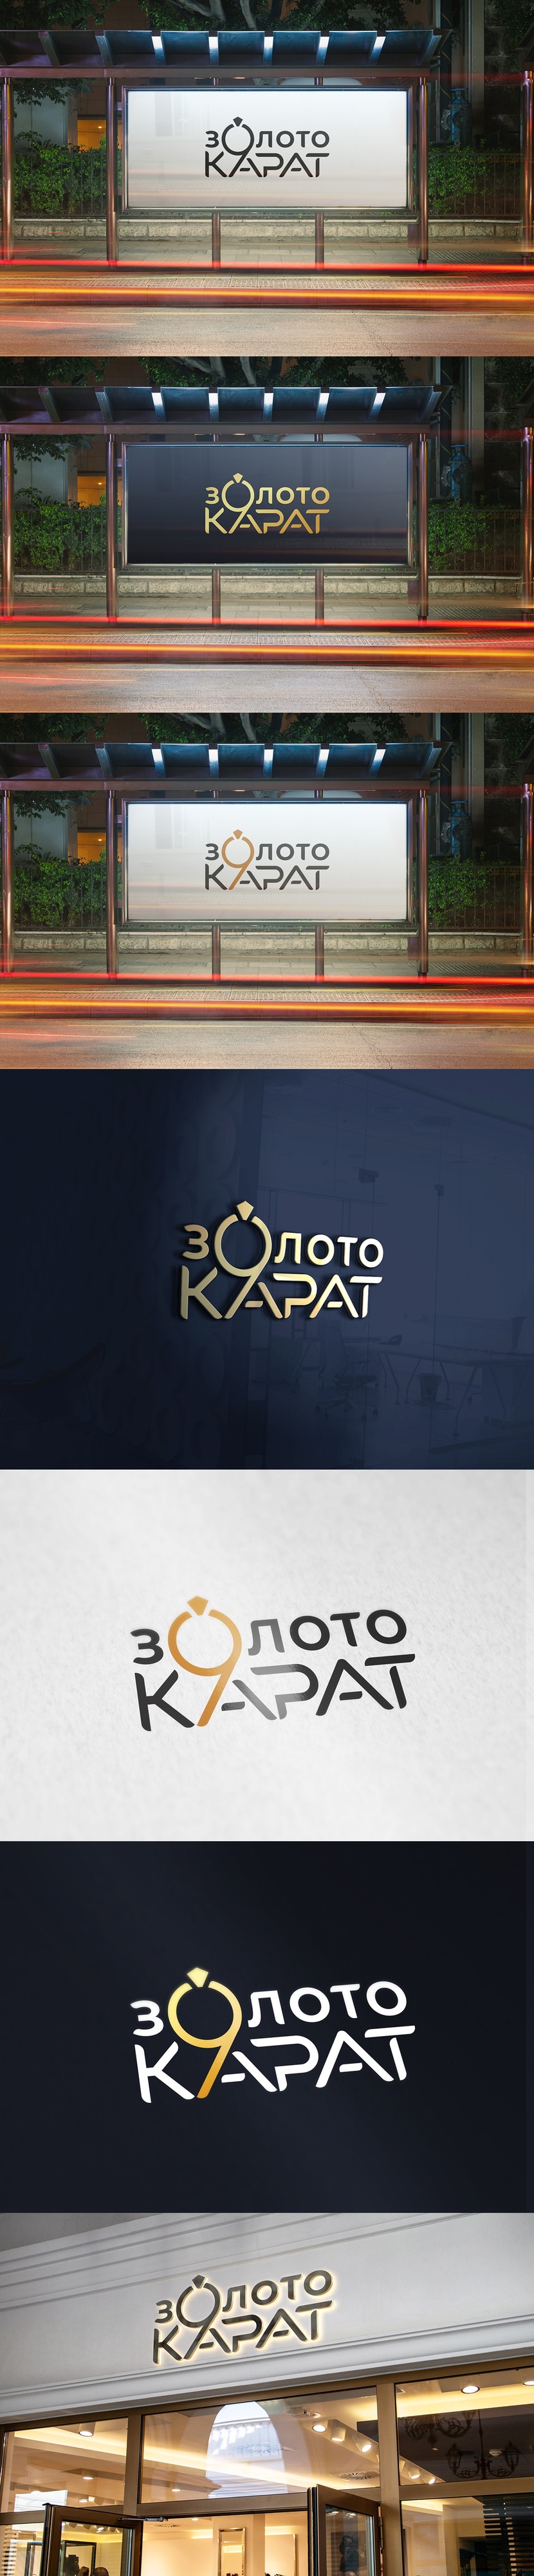 золото 9 карат - Разработка лого для новой коллекции ювелирных украшений